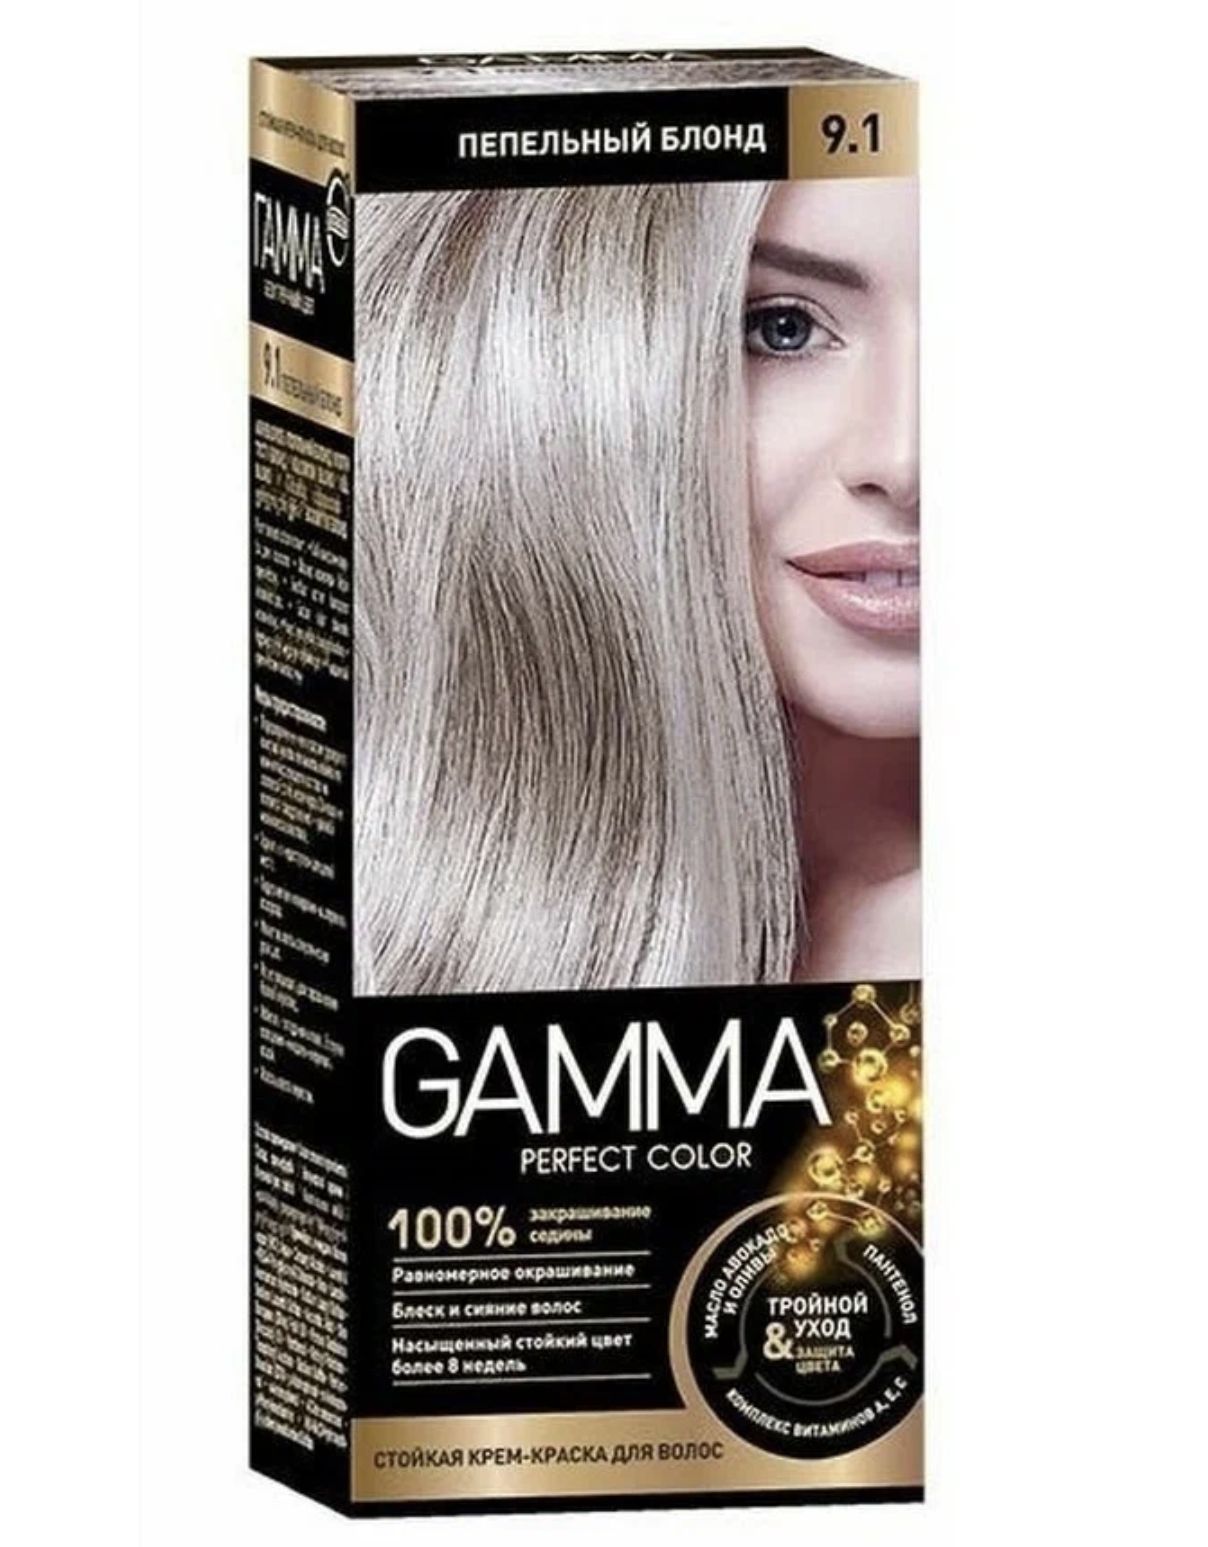 Краска для волос пепельных тонов. Gamma perfect Color краска для волос. Gamma perfect Color 9.1. Gamma perfect Color краска пепельный. Gamma краска блонд.